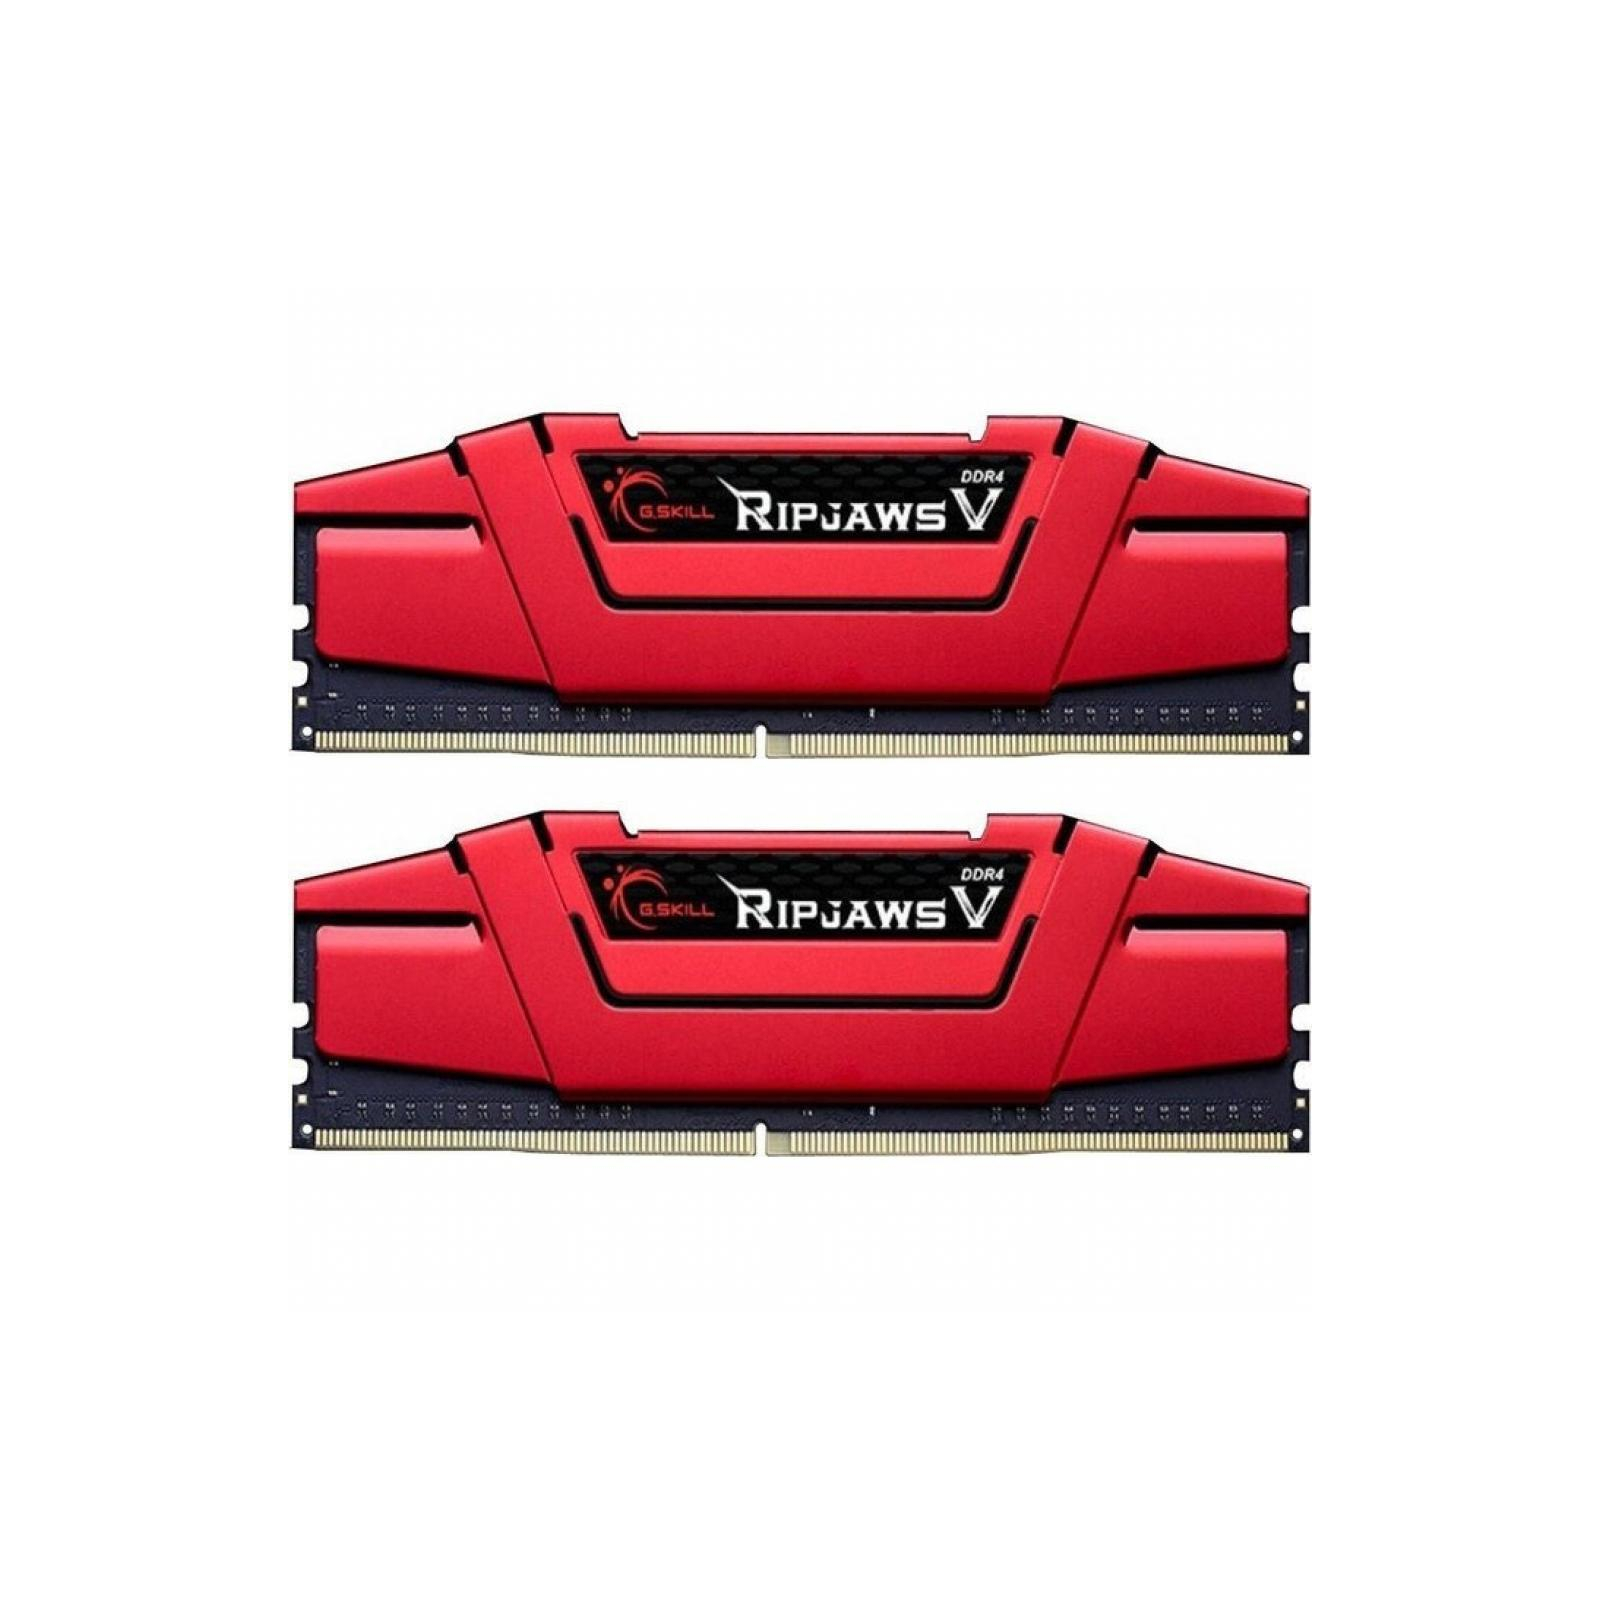 Модуль памяти для компьютера DDR4 16GB (2x8GB) 2666 MHz RipjawsV RED G.Skill (F4-2666C15D-16GVR)